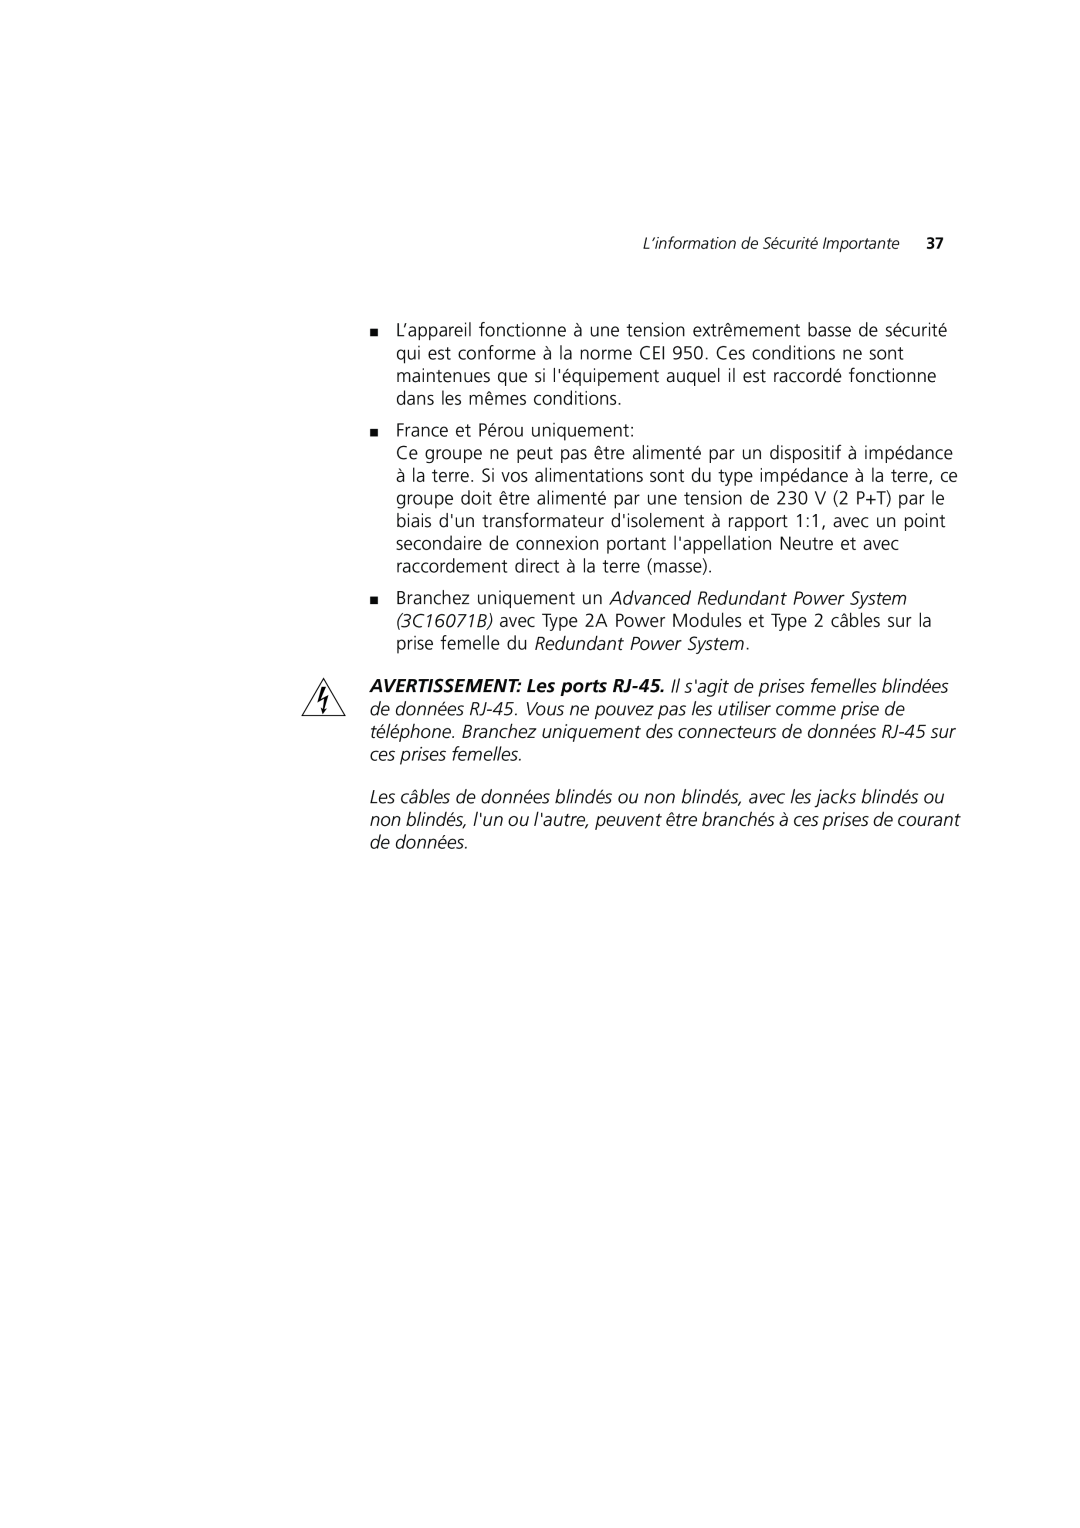 3Com DUA1698 manual France et Pérou uniquement, L’information de Sécurité Importante 